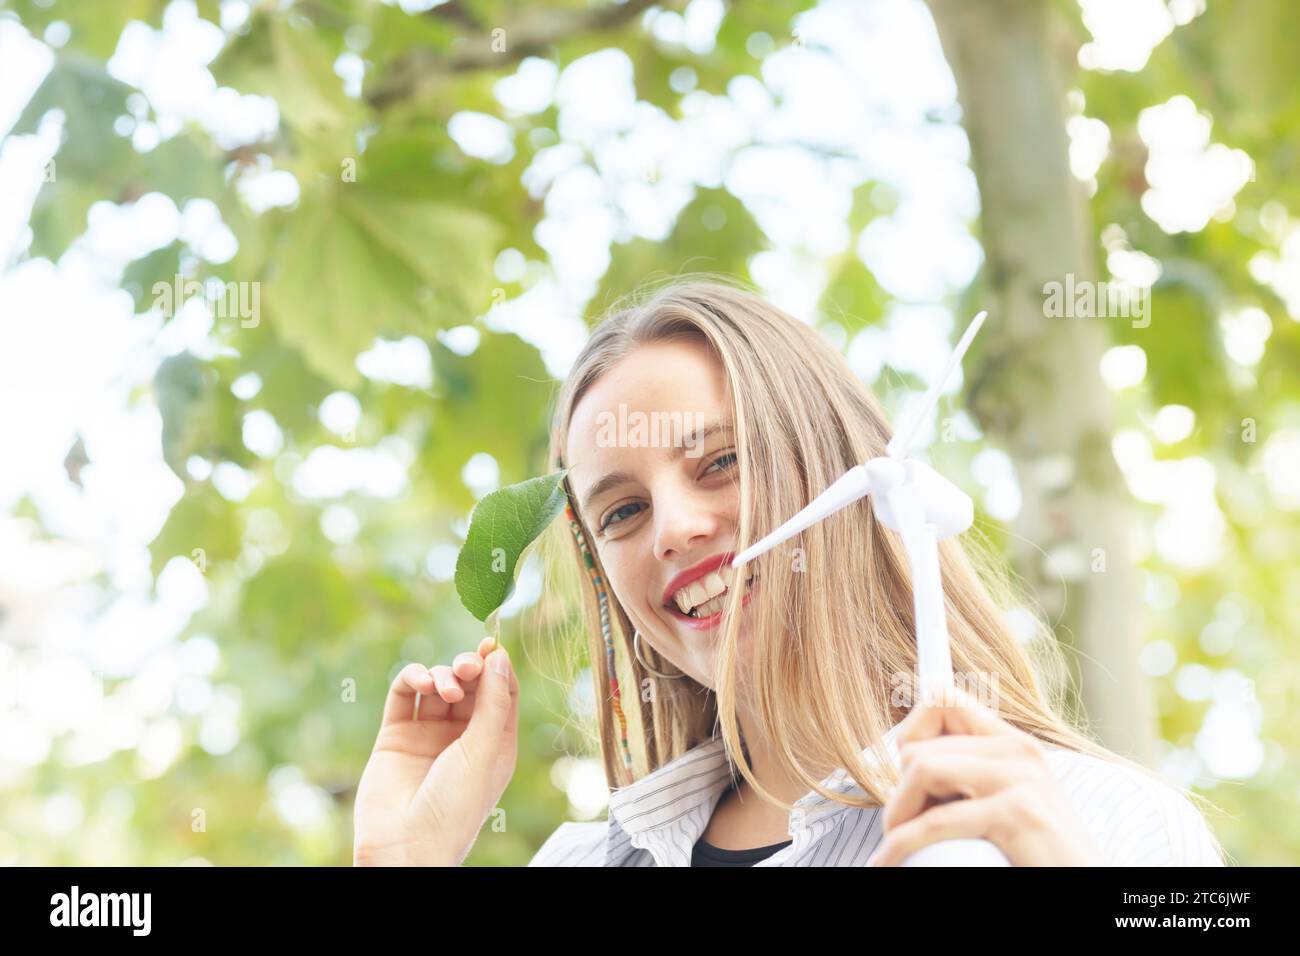 Junge Frau mit blonden langen Haaren, die grüne Klimazeichen hält Stockfoto